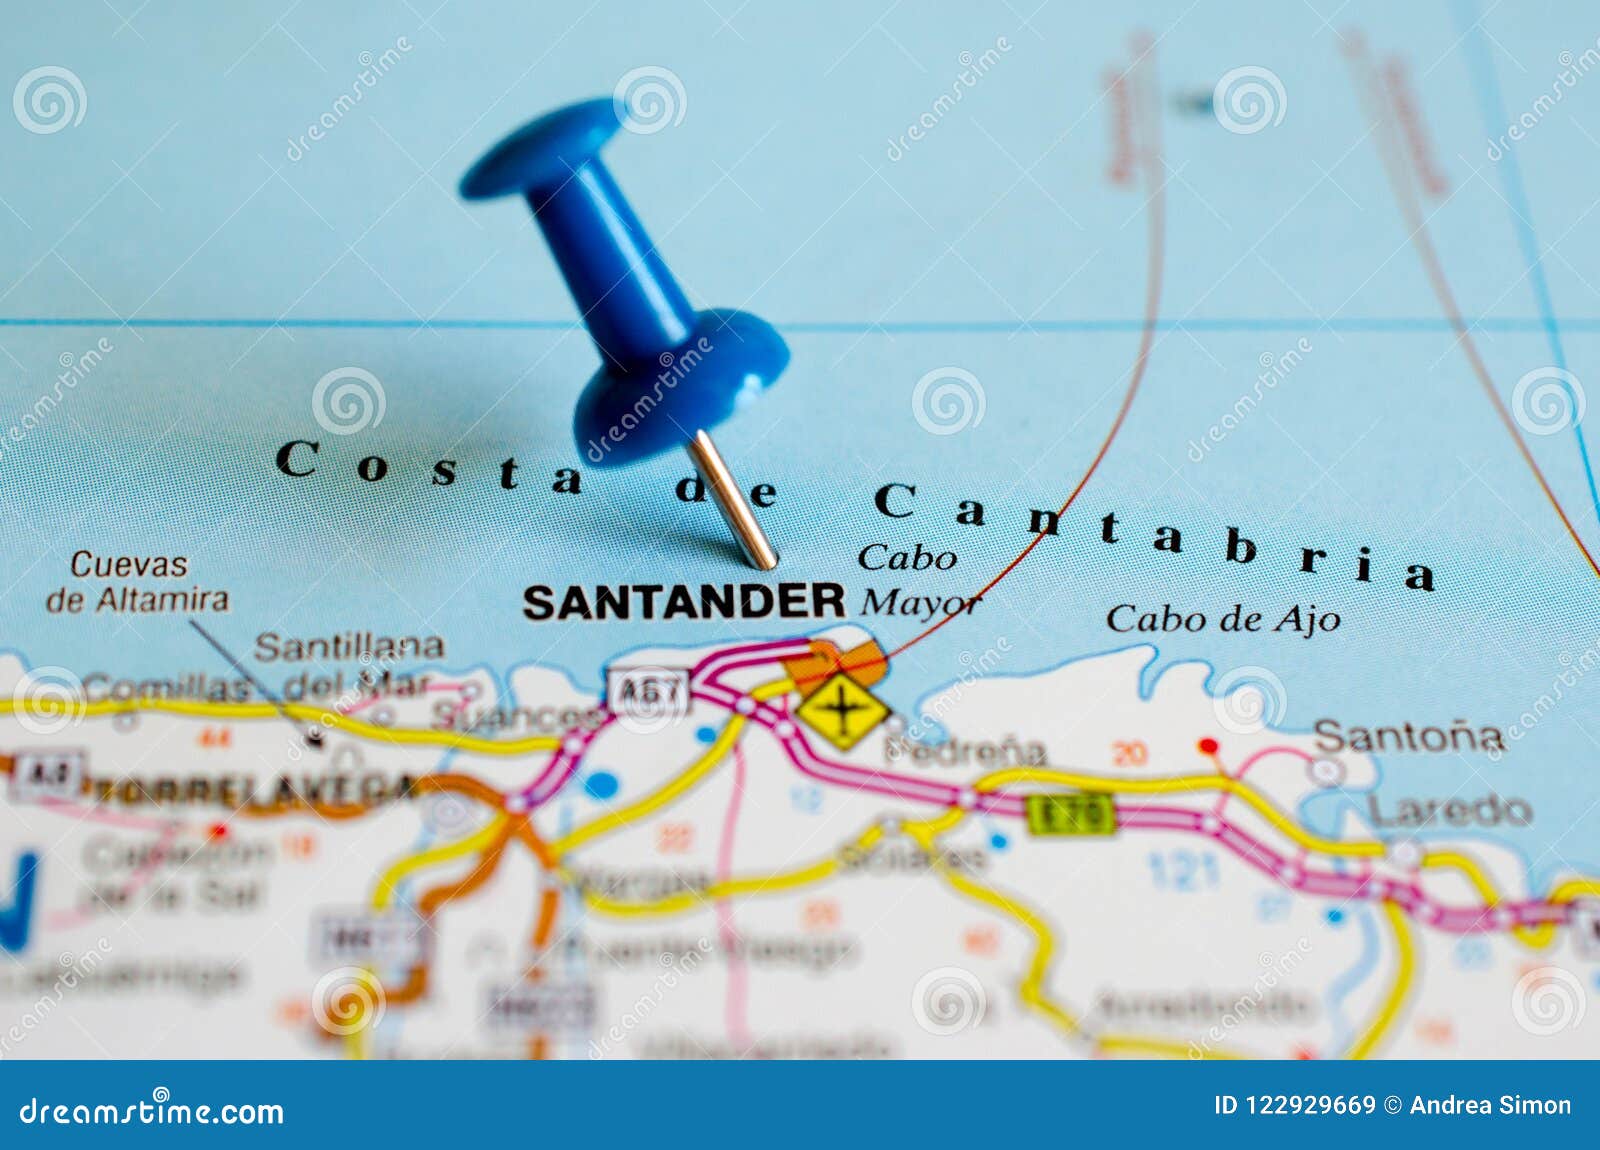 santander, spain on map